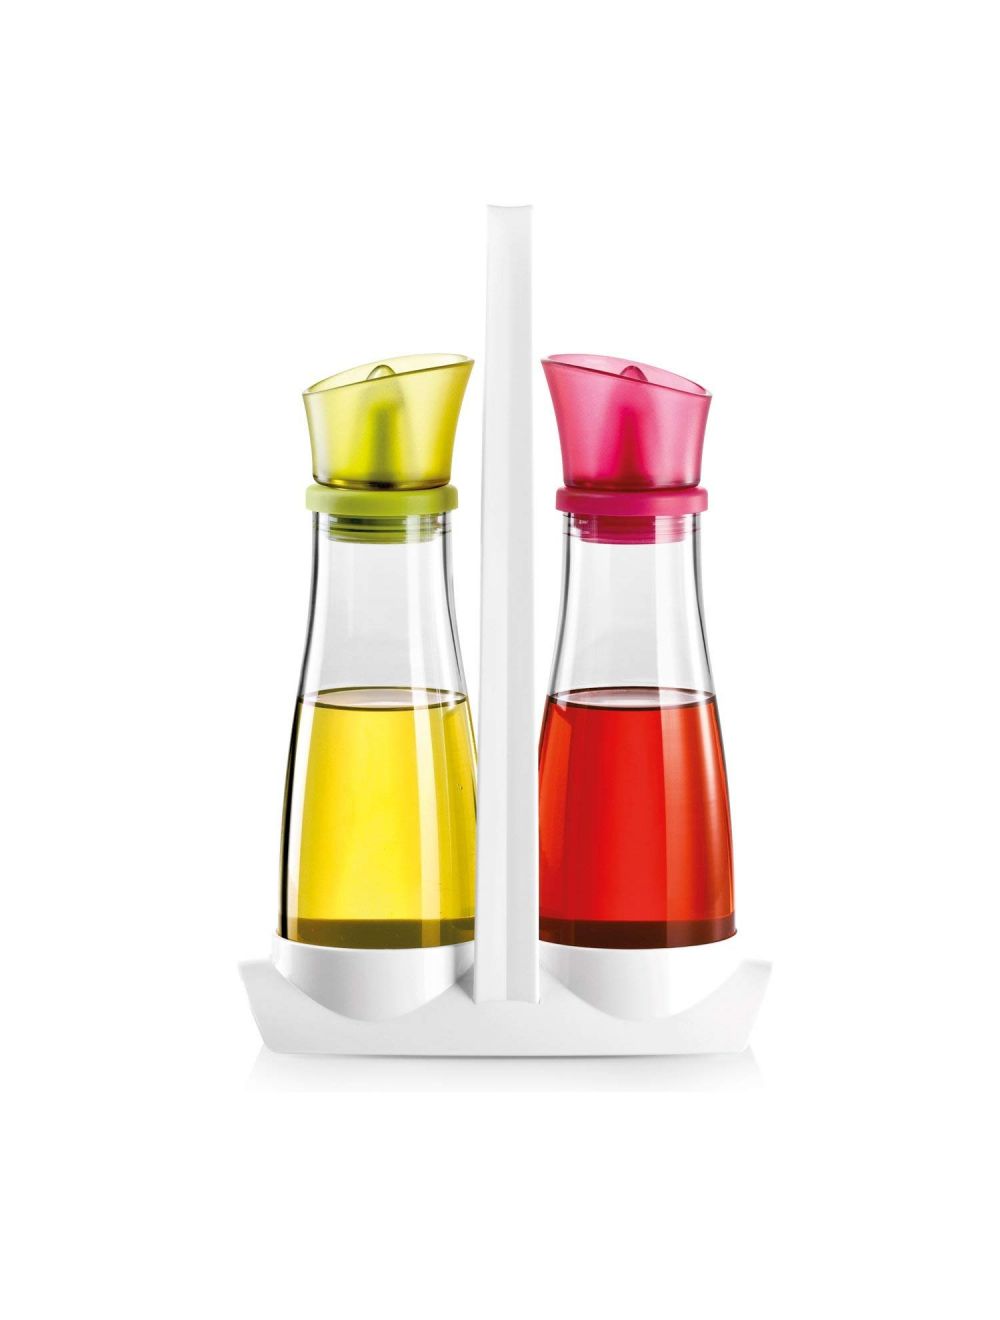 Vitamino Oil and Vinegar Set - 250ml